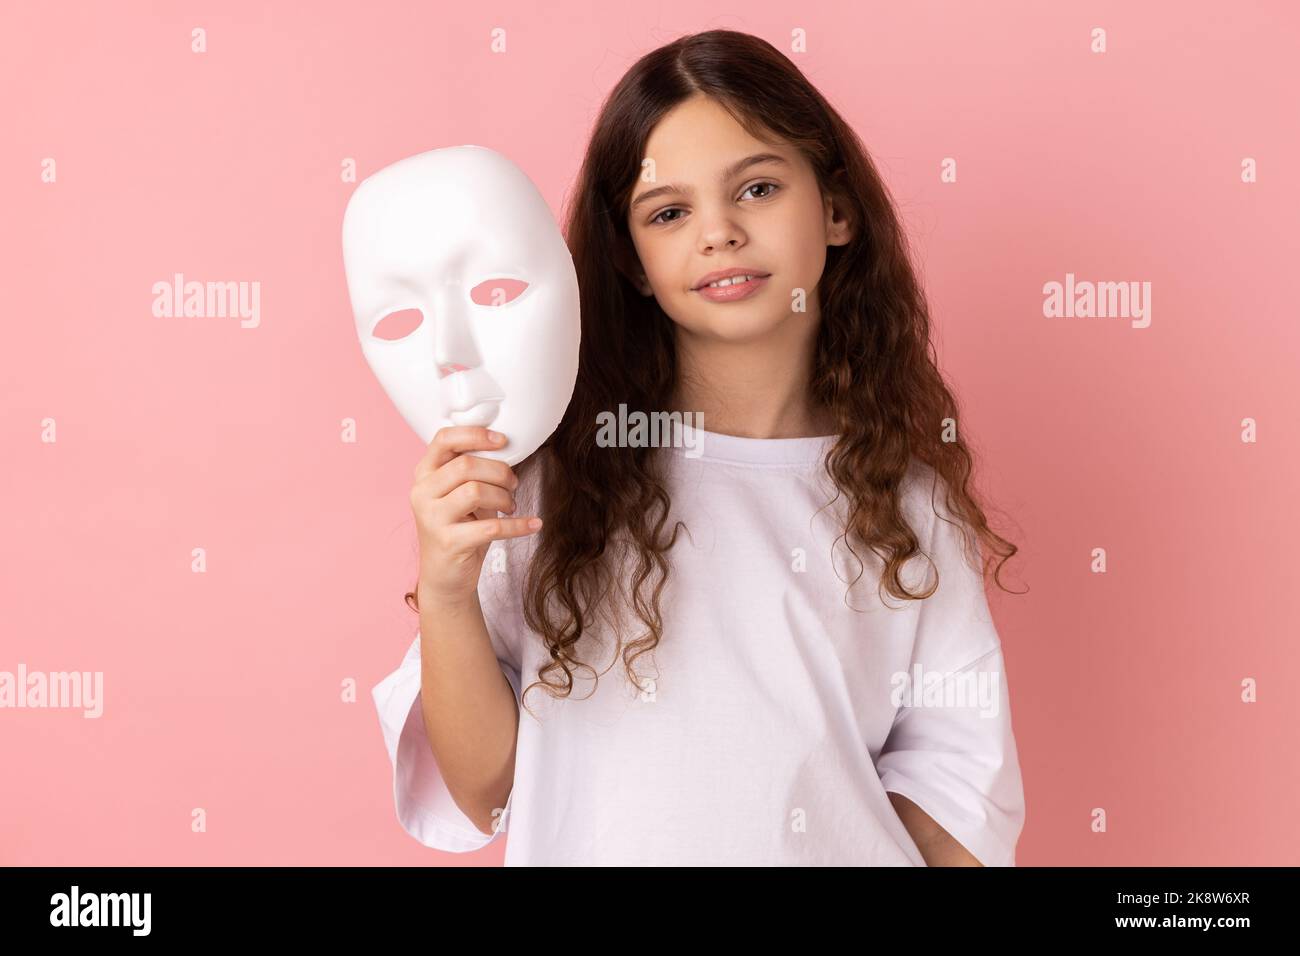 Portrait de charmante adorable adorable petite fille à cheveux foncés portant un T-shirt blanc tenant un masque blanc dans sa main, veut changer de personnalité. Studio d'intérieur isolé sur fond rose. Banque D'Images